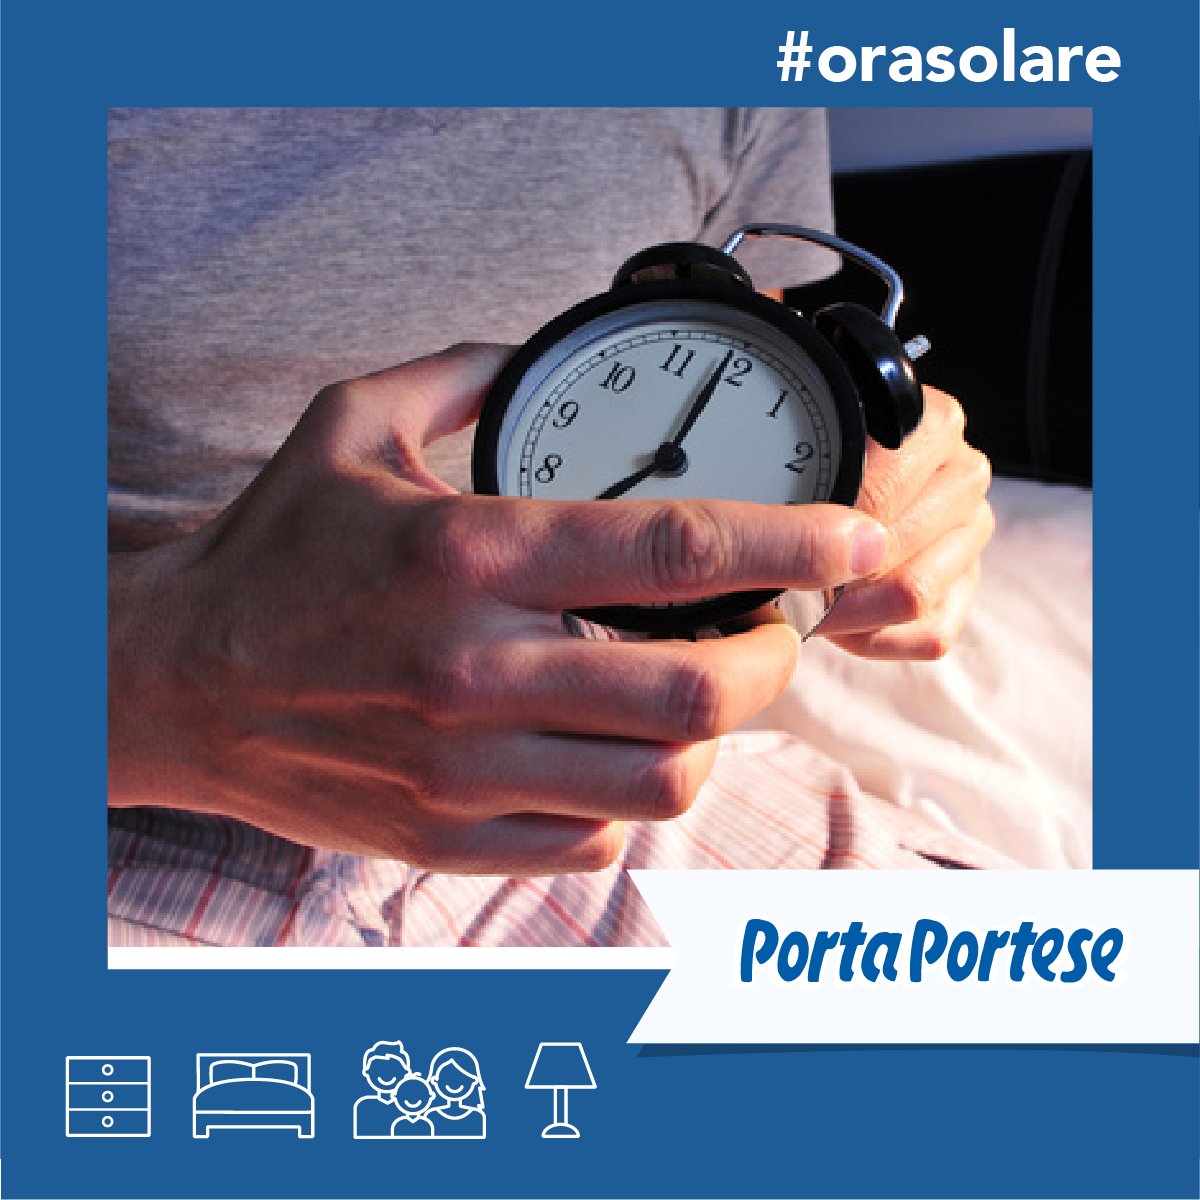 Se hai spostato le lancette ma l'orologio continua a segnare l'ora sbagliata, vendilo su Porta Portese: bit.ly/PP_InserisciAnn #orasolare